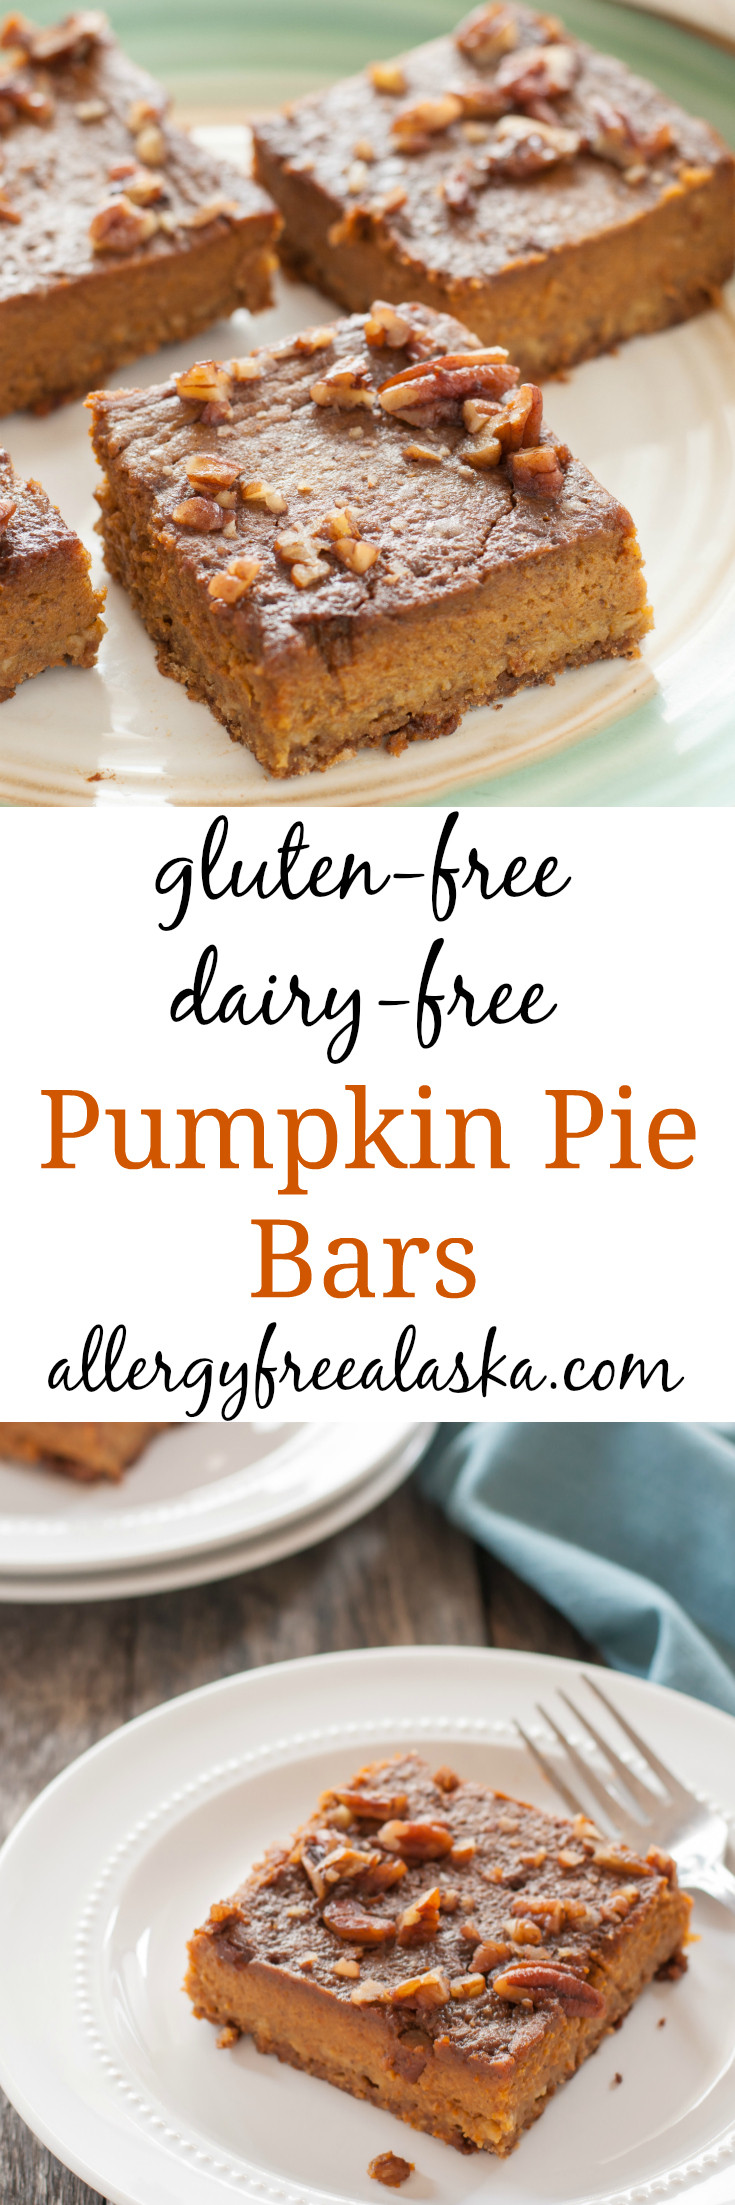 Pumpkin Pie Dairy Free
 gluten free dairy free pumpkin pie bar recipe from allergy